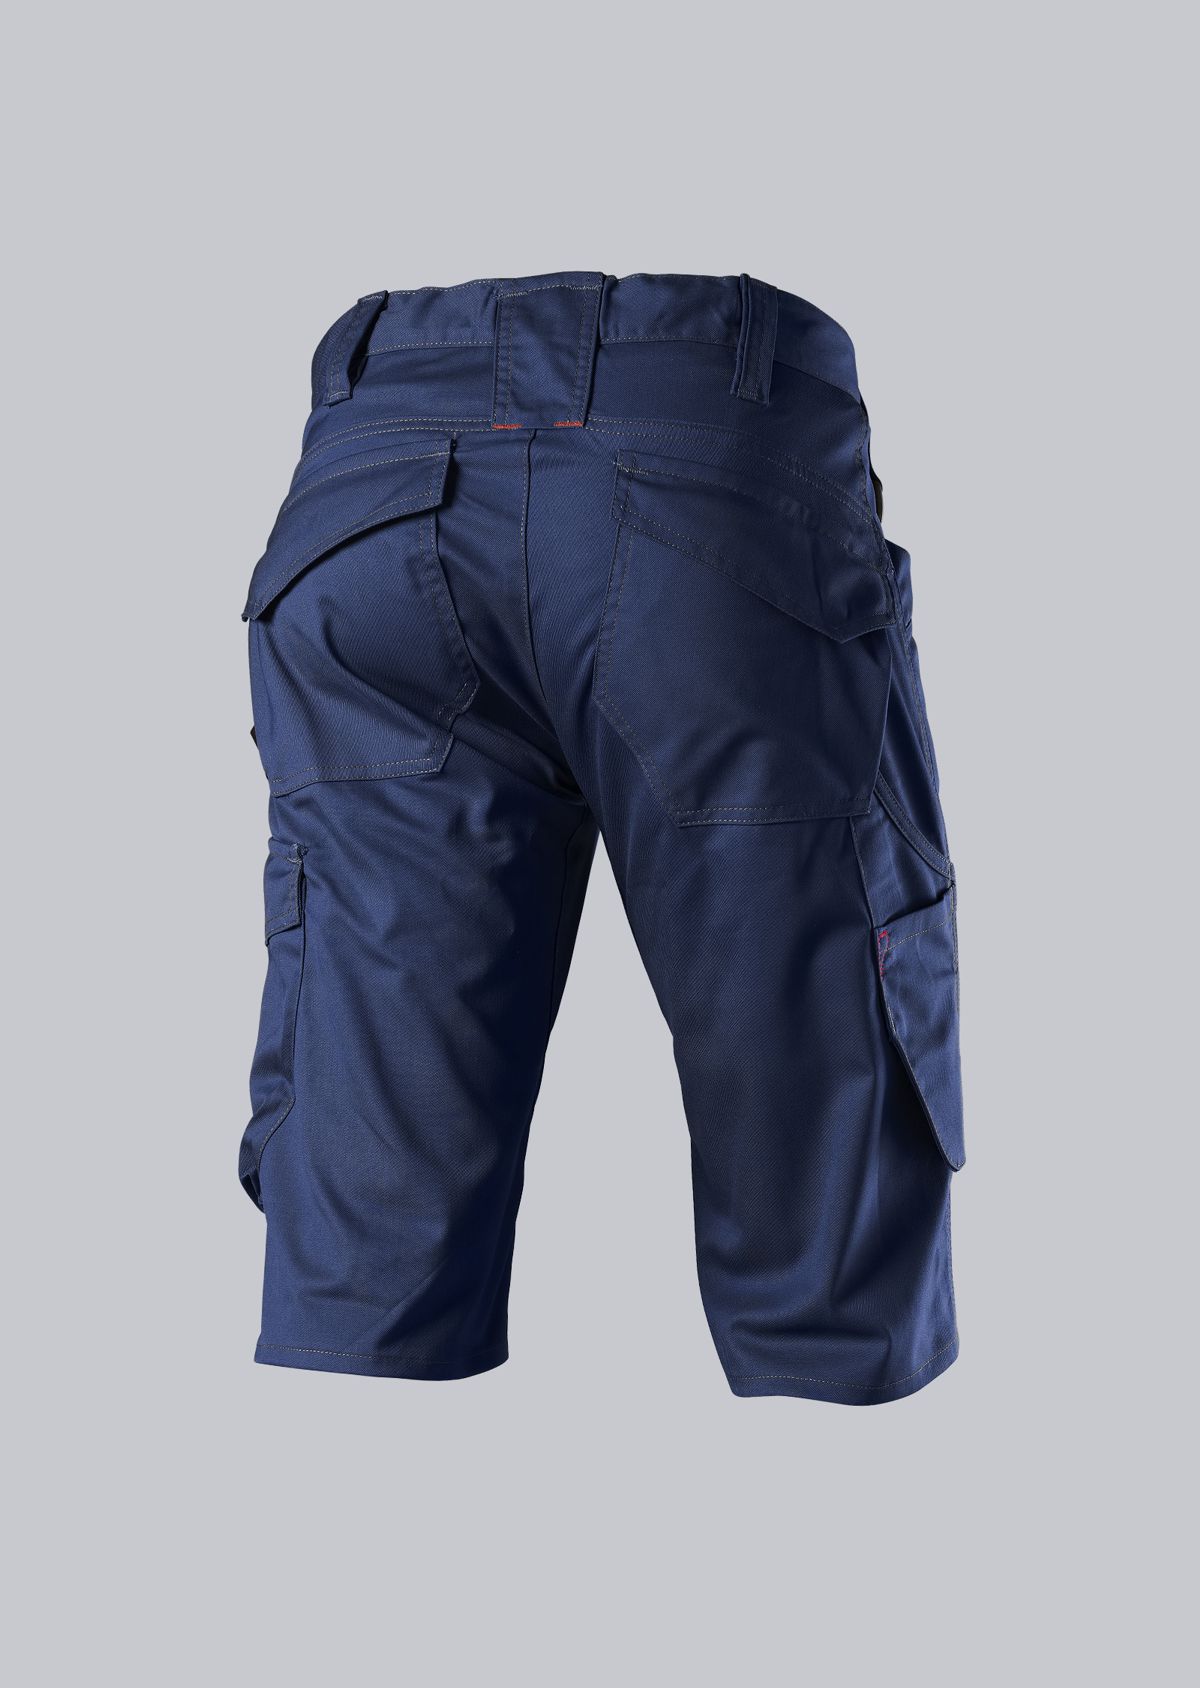 BP® Lightweight shorts